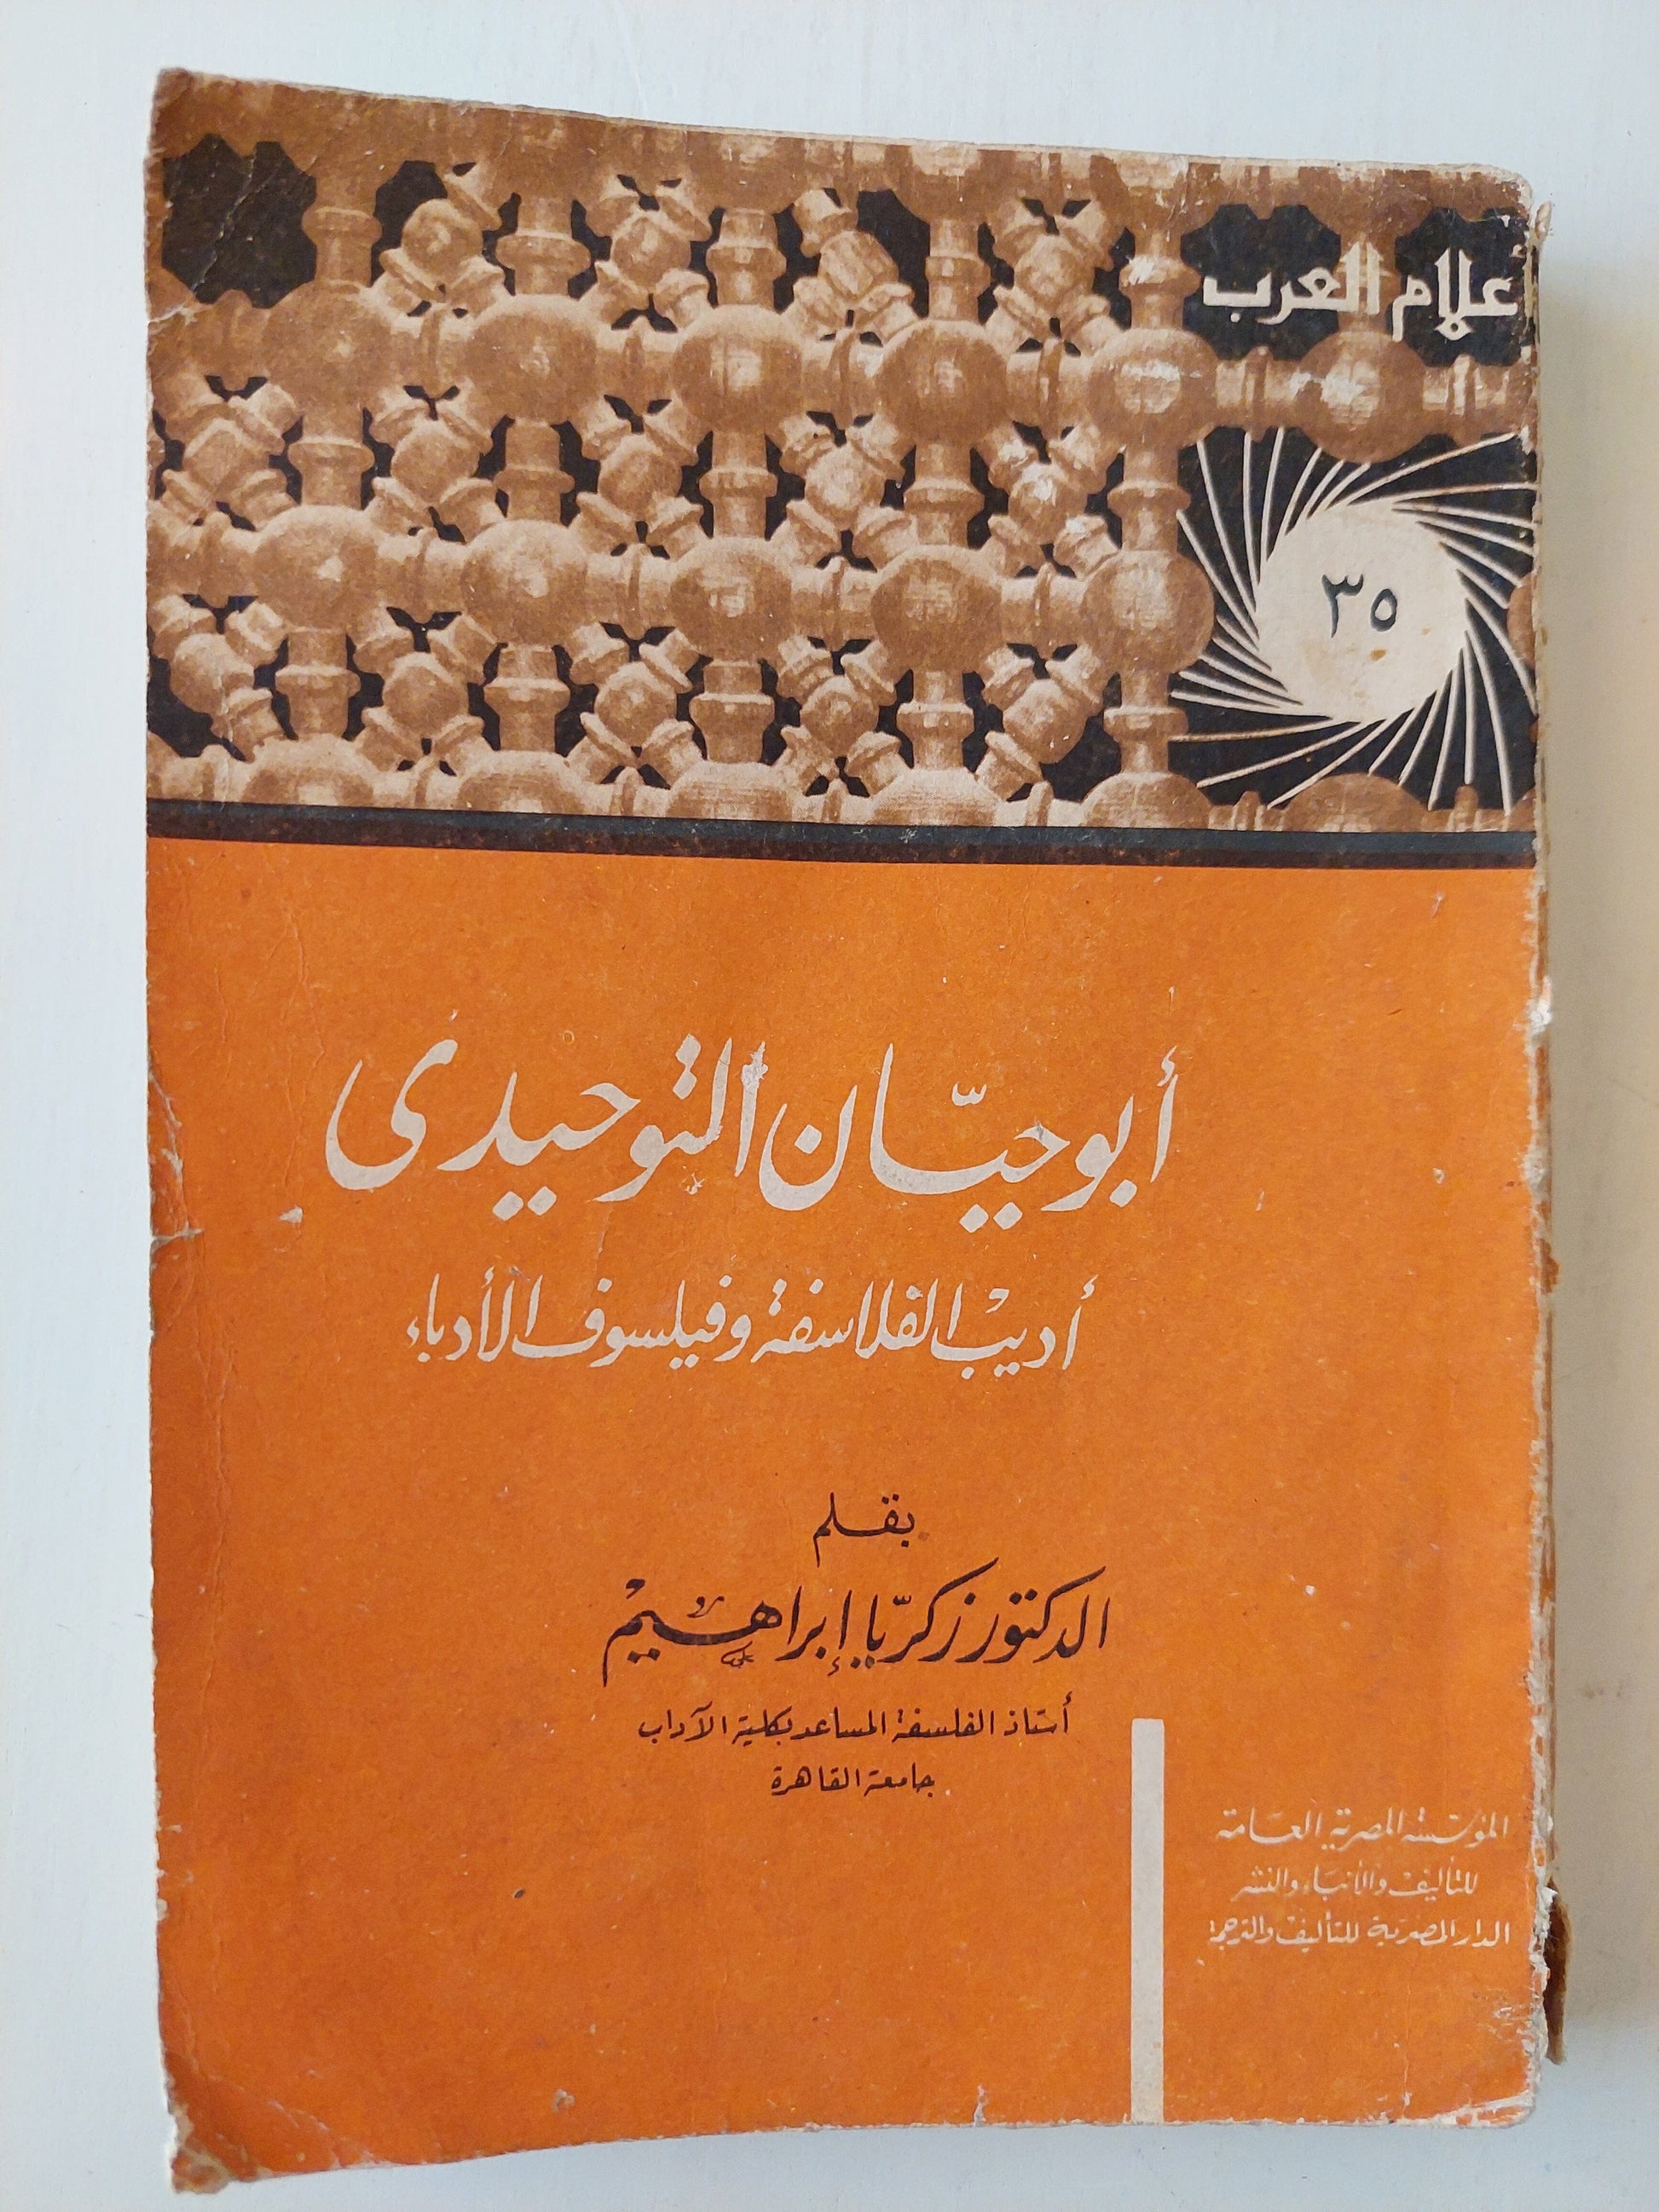 أبو حيان التوحيدي - أديب الفلاسفة وفيلسوف الأدباء كتاب المكتبة الفلسفية 